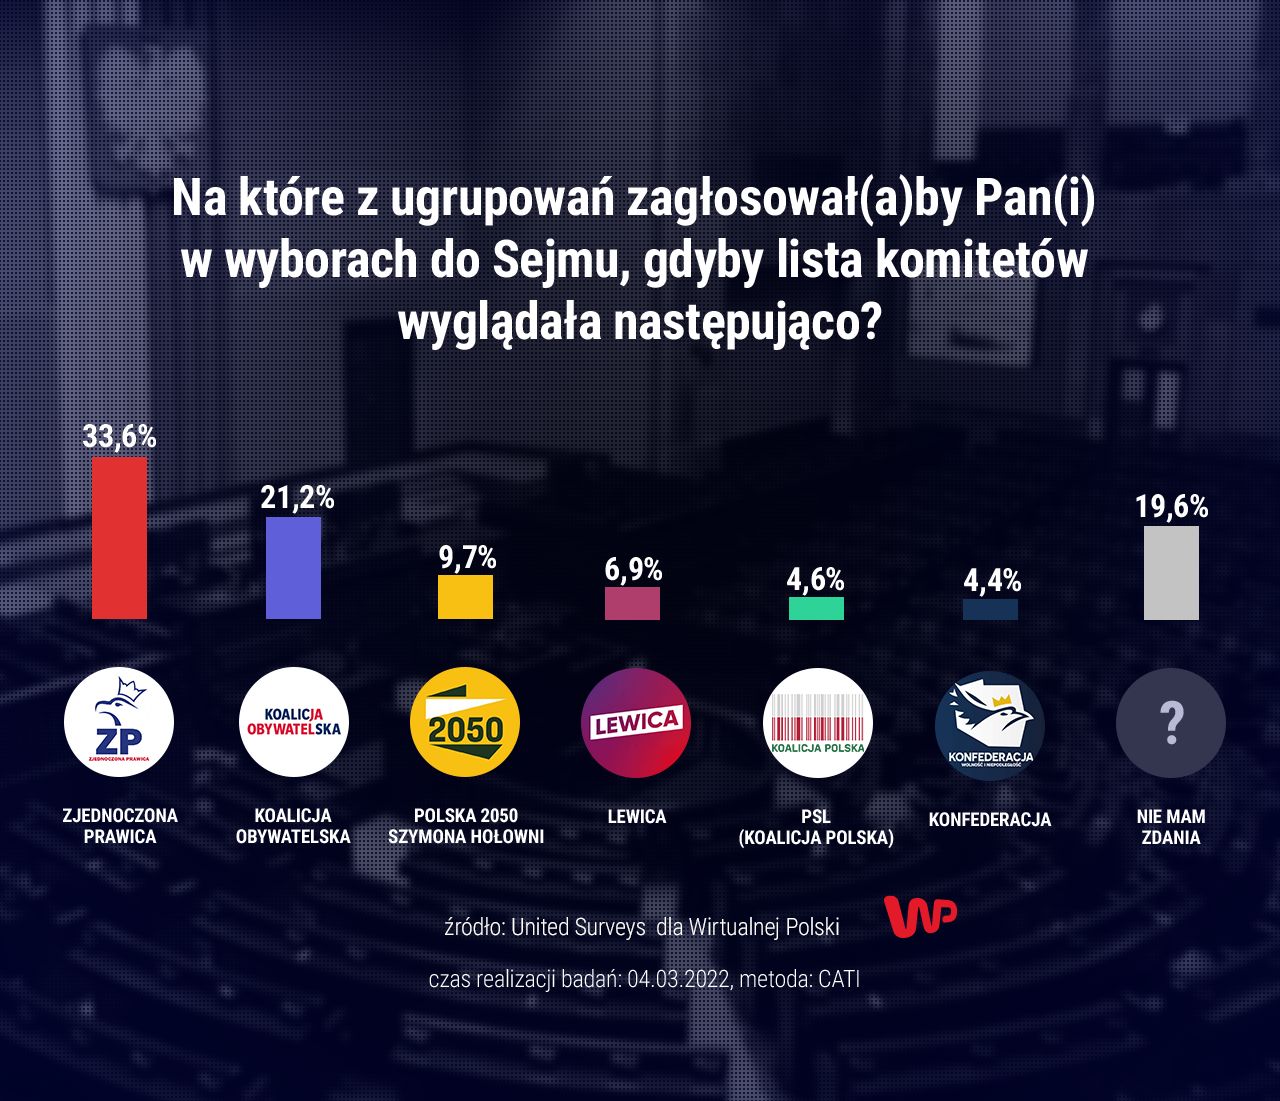 Zjednoczona Prawica na pierwszym miejscu, Konfederacja z niskim poparciem. I aż niemal 20 proc. tych, którzy nie wiedzą, kogo wybrać - takie są wyniki sondażu United Surveys, przeprowadzonego na zlecenie Wirtualnej Polski 